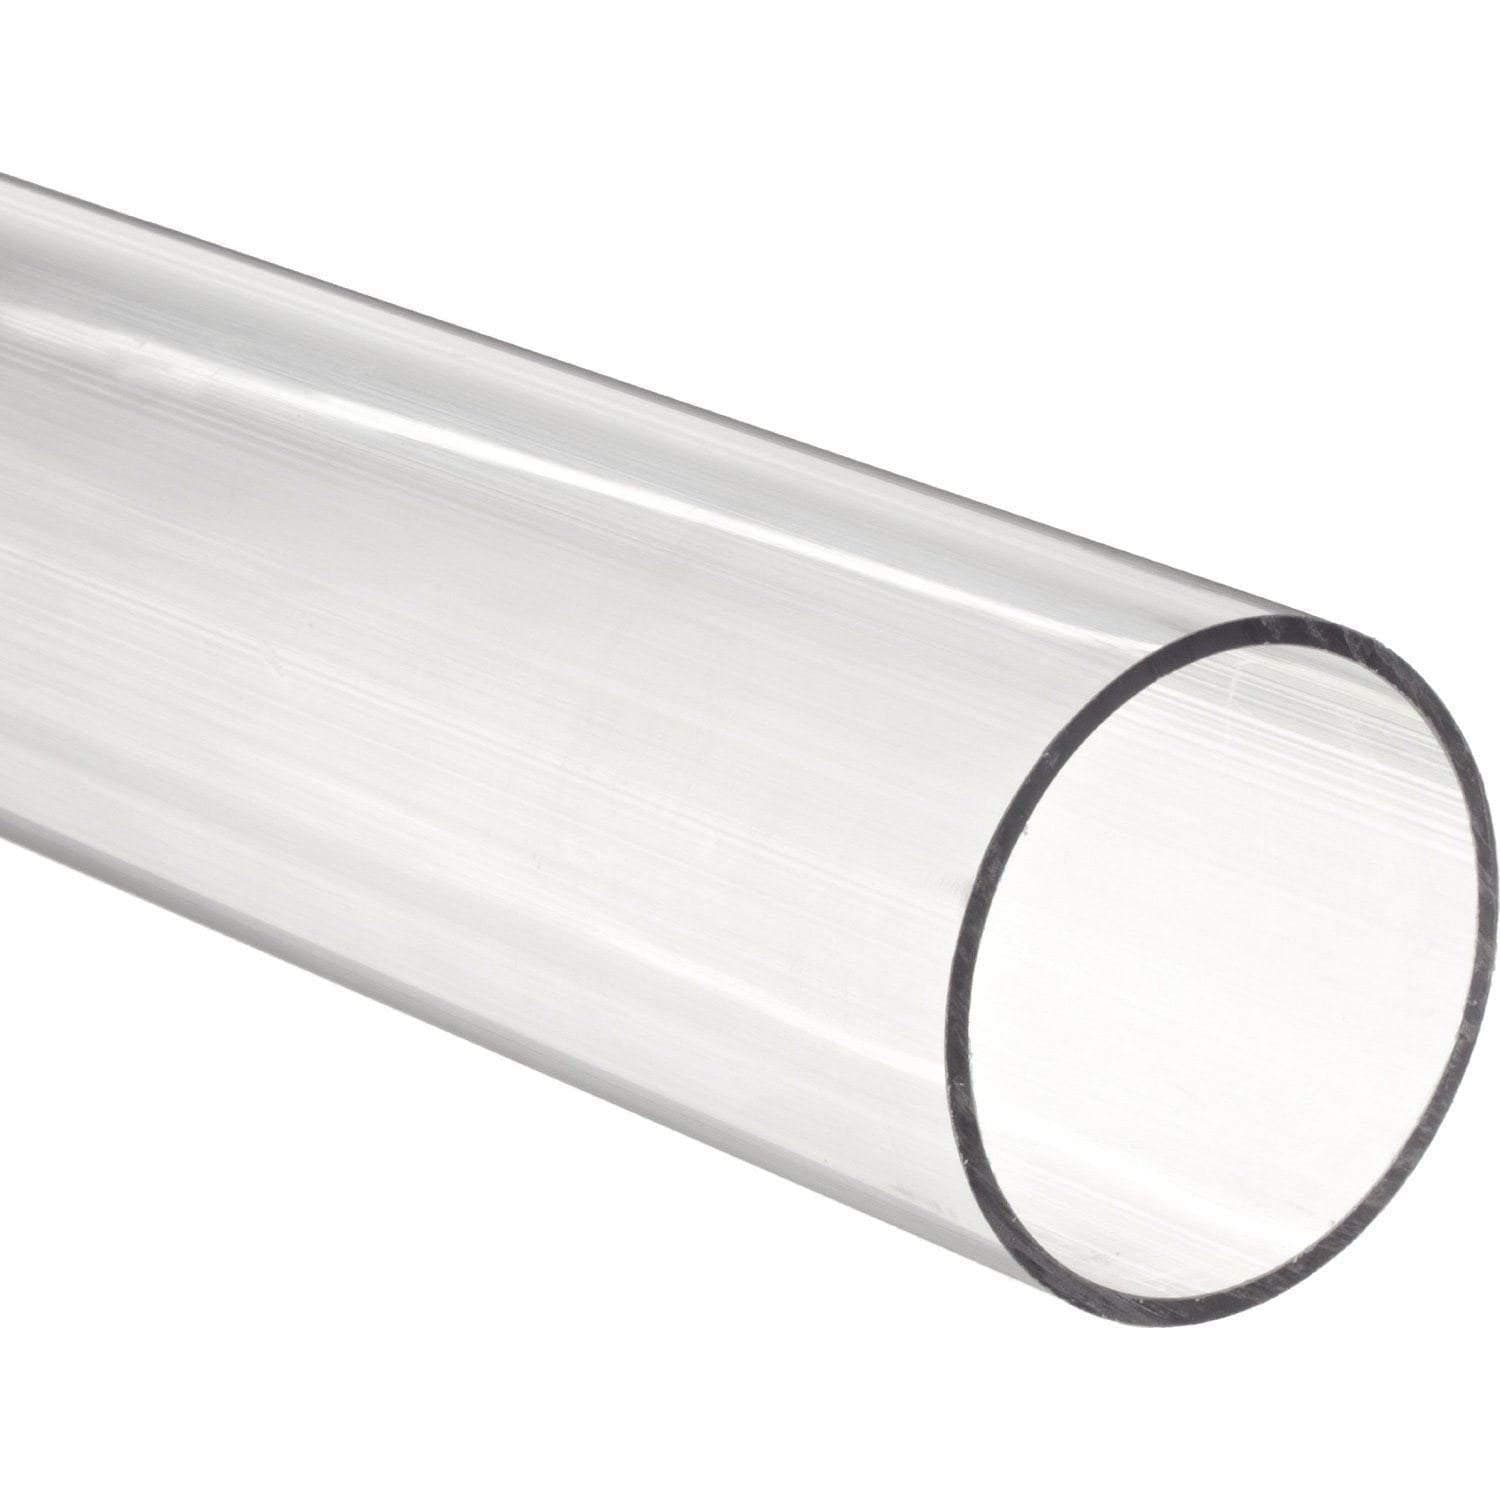 Tubo acrílico de 1/2" de diámetro exterior x 1/4" de diámetro interior - Transparente